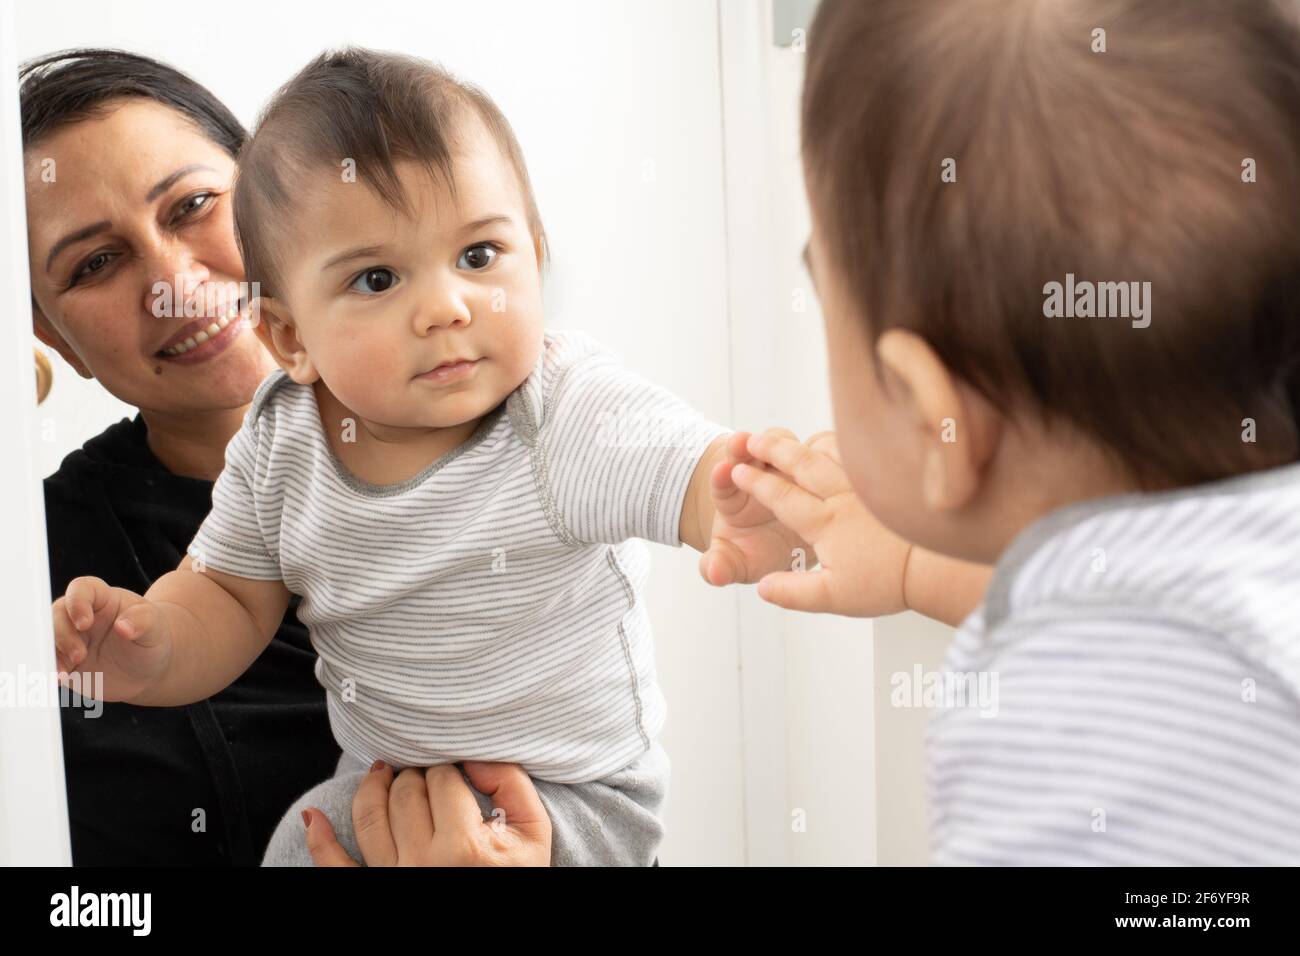 bambino di 8 mesi con madre che guarda la riflessione in specchio, non sa che il bambino in specchio è lui stesso Foto Stock